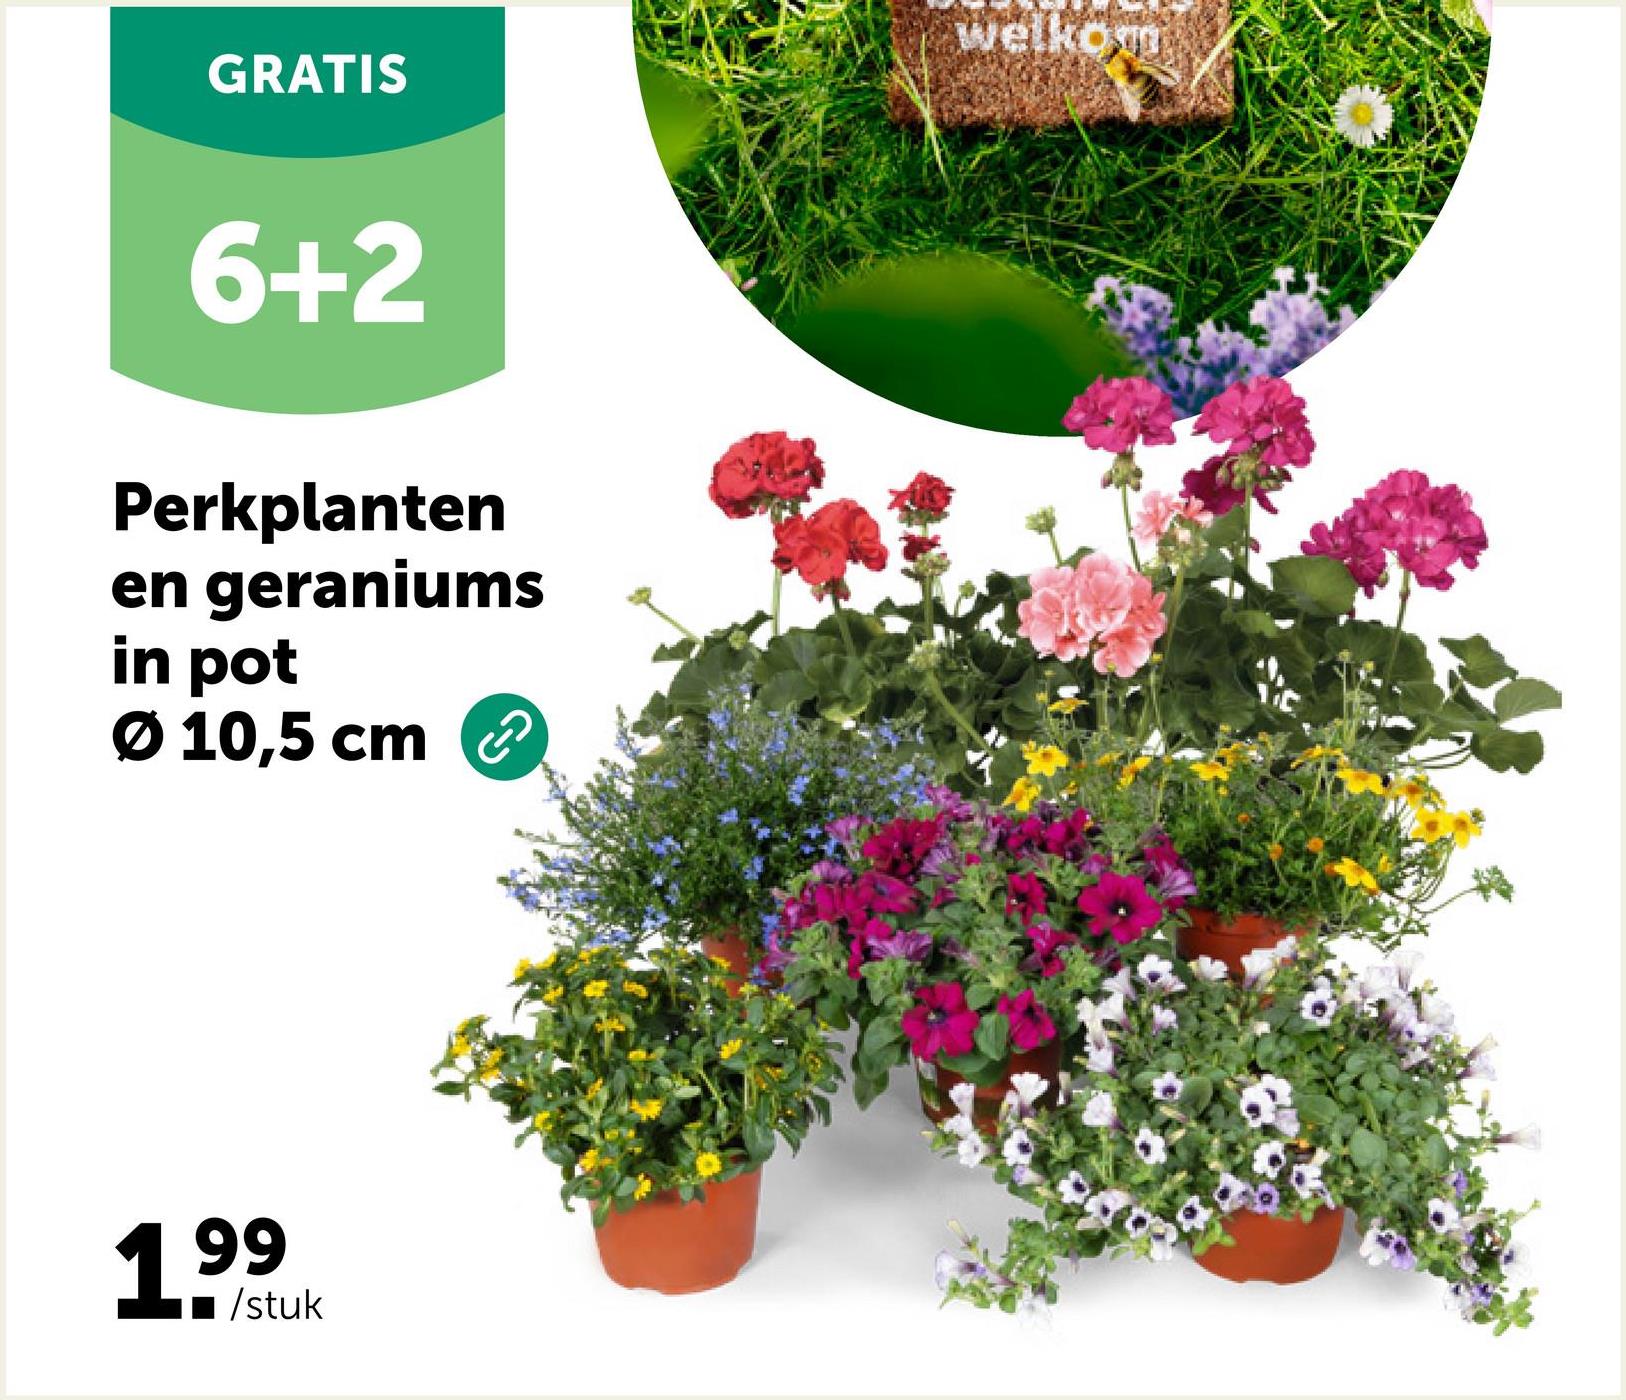 GRATIS
6+2
Perkplanten
en geraniums
in pot
Ø 10,5 cm
199
/stuk
Welkom